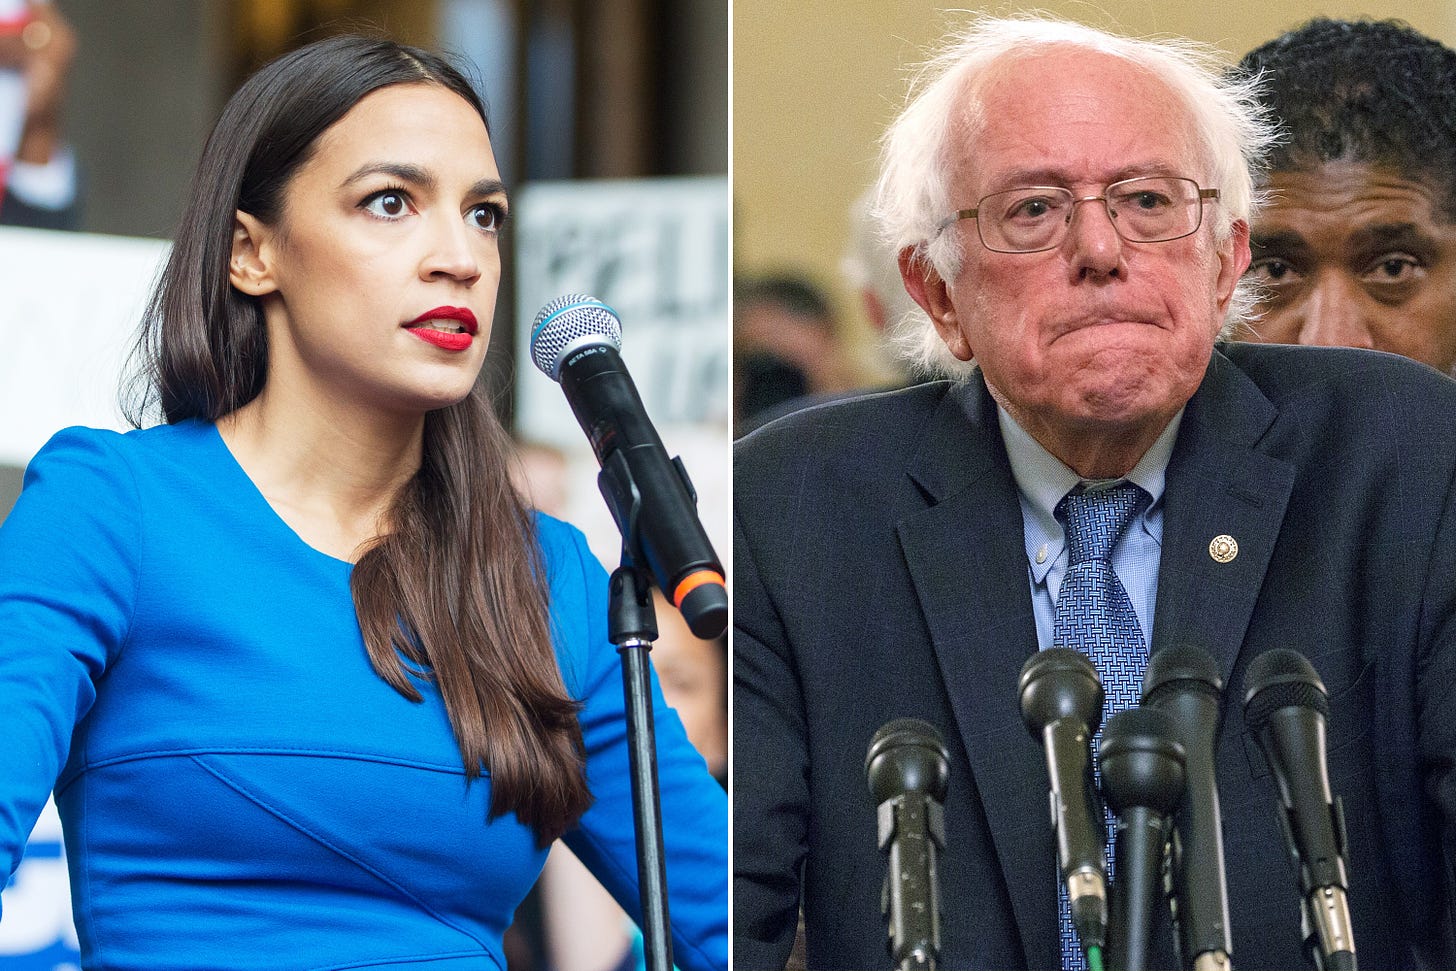 Alexandria Ocasio-Cortez isn't endorsing Bernie Sanders' 2020 bid